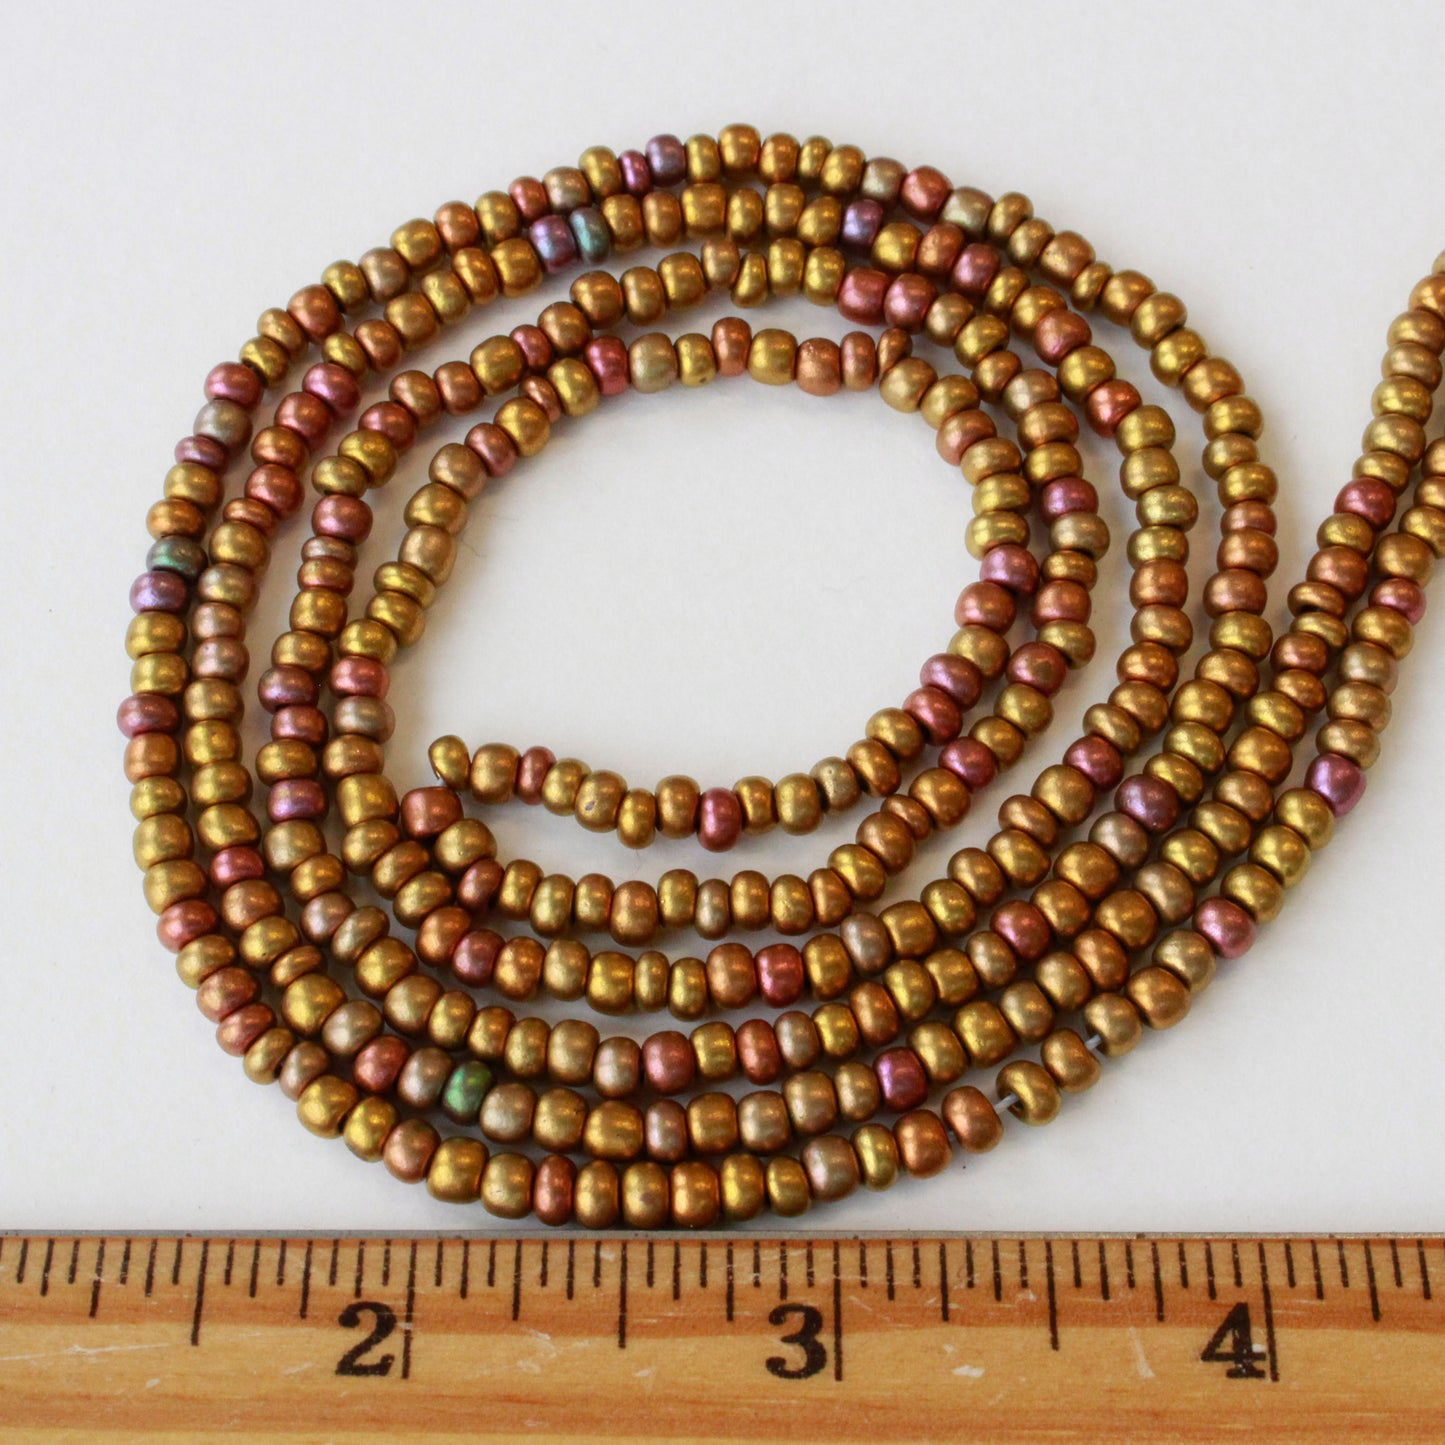 Size 6 Seed Beads - Rose Gold Iris - Choose Amount